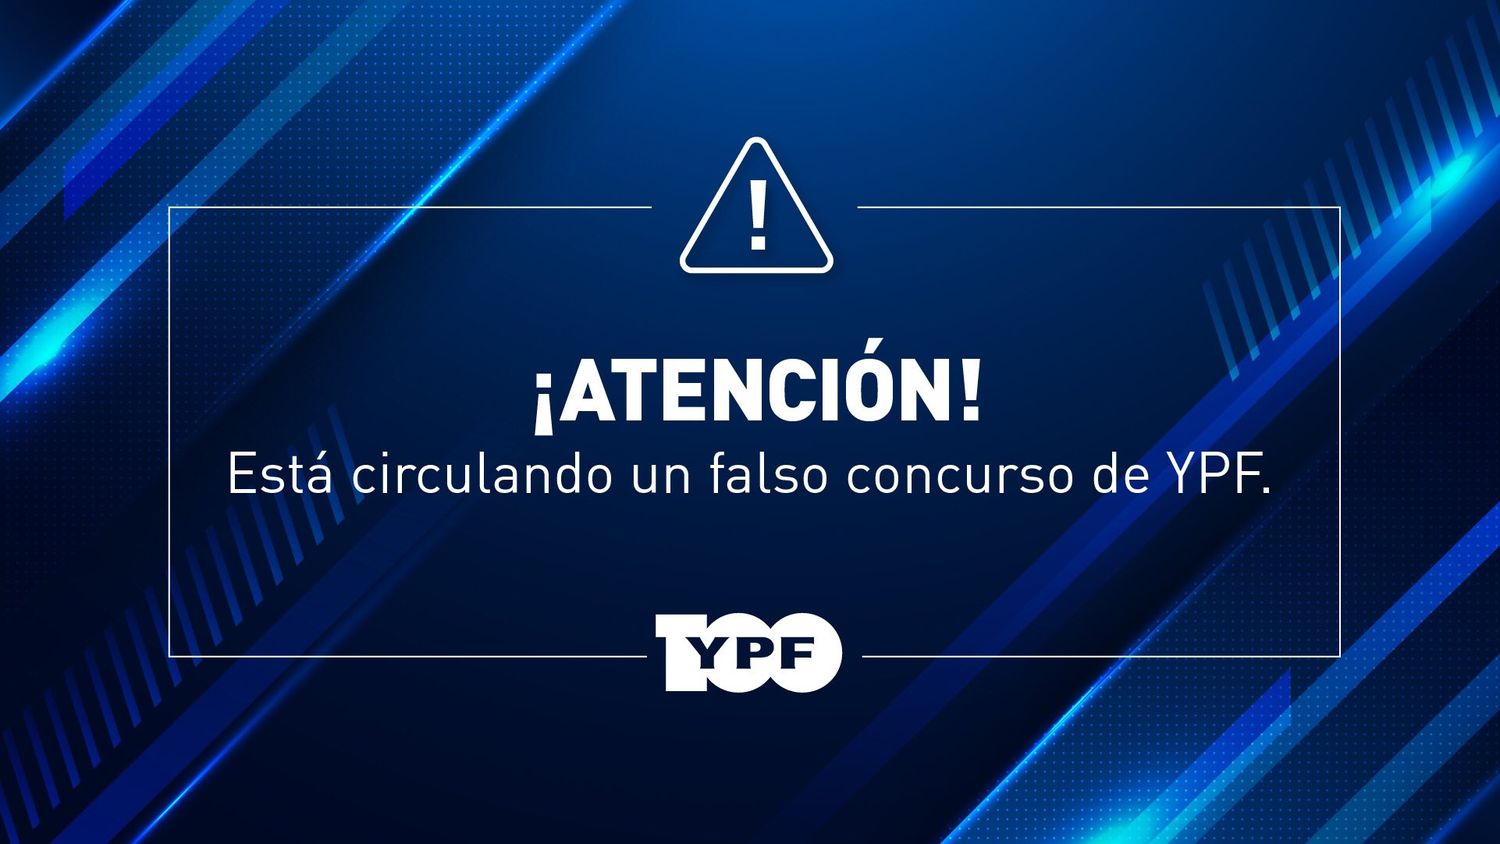 YPF advirtió sobre concurso falso viralizado en redes sociales